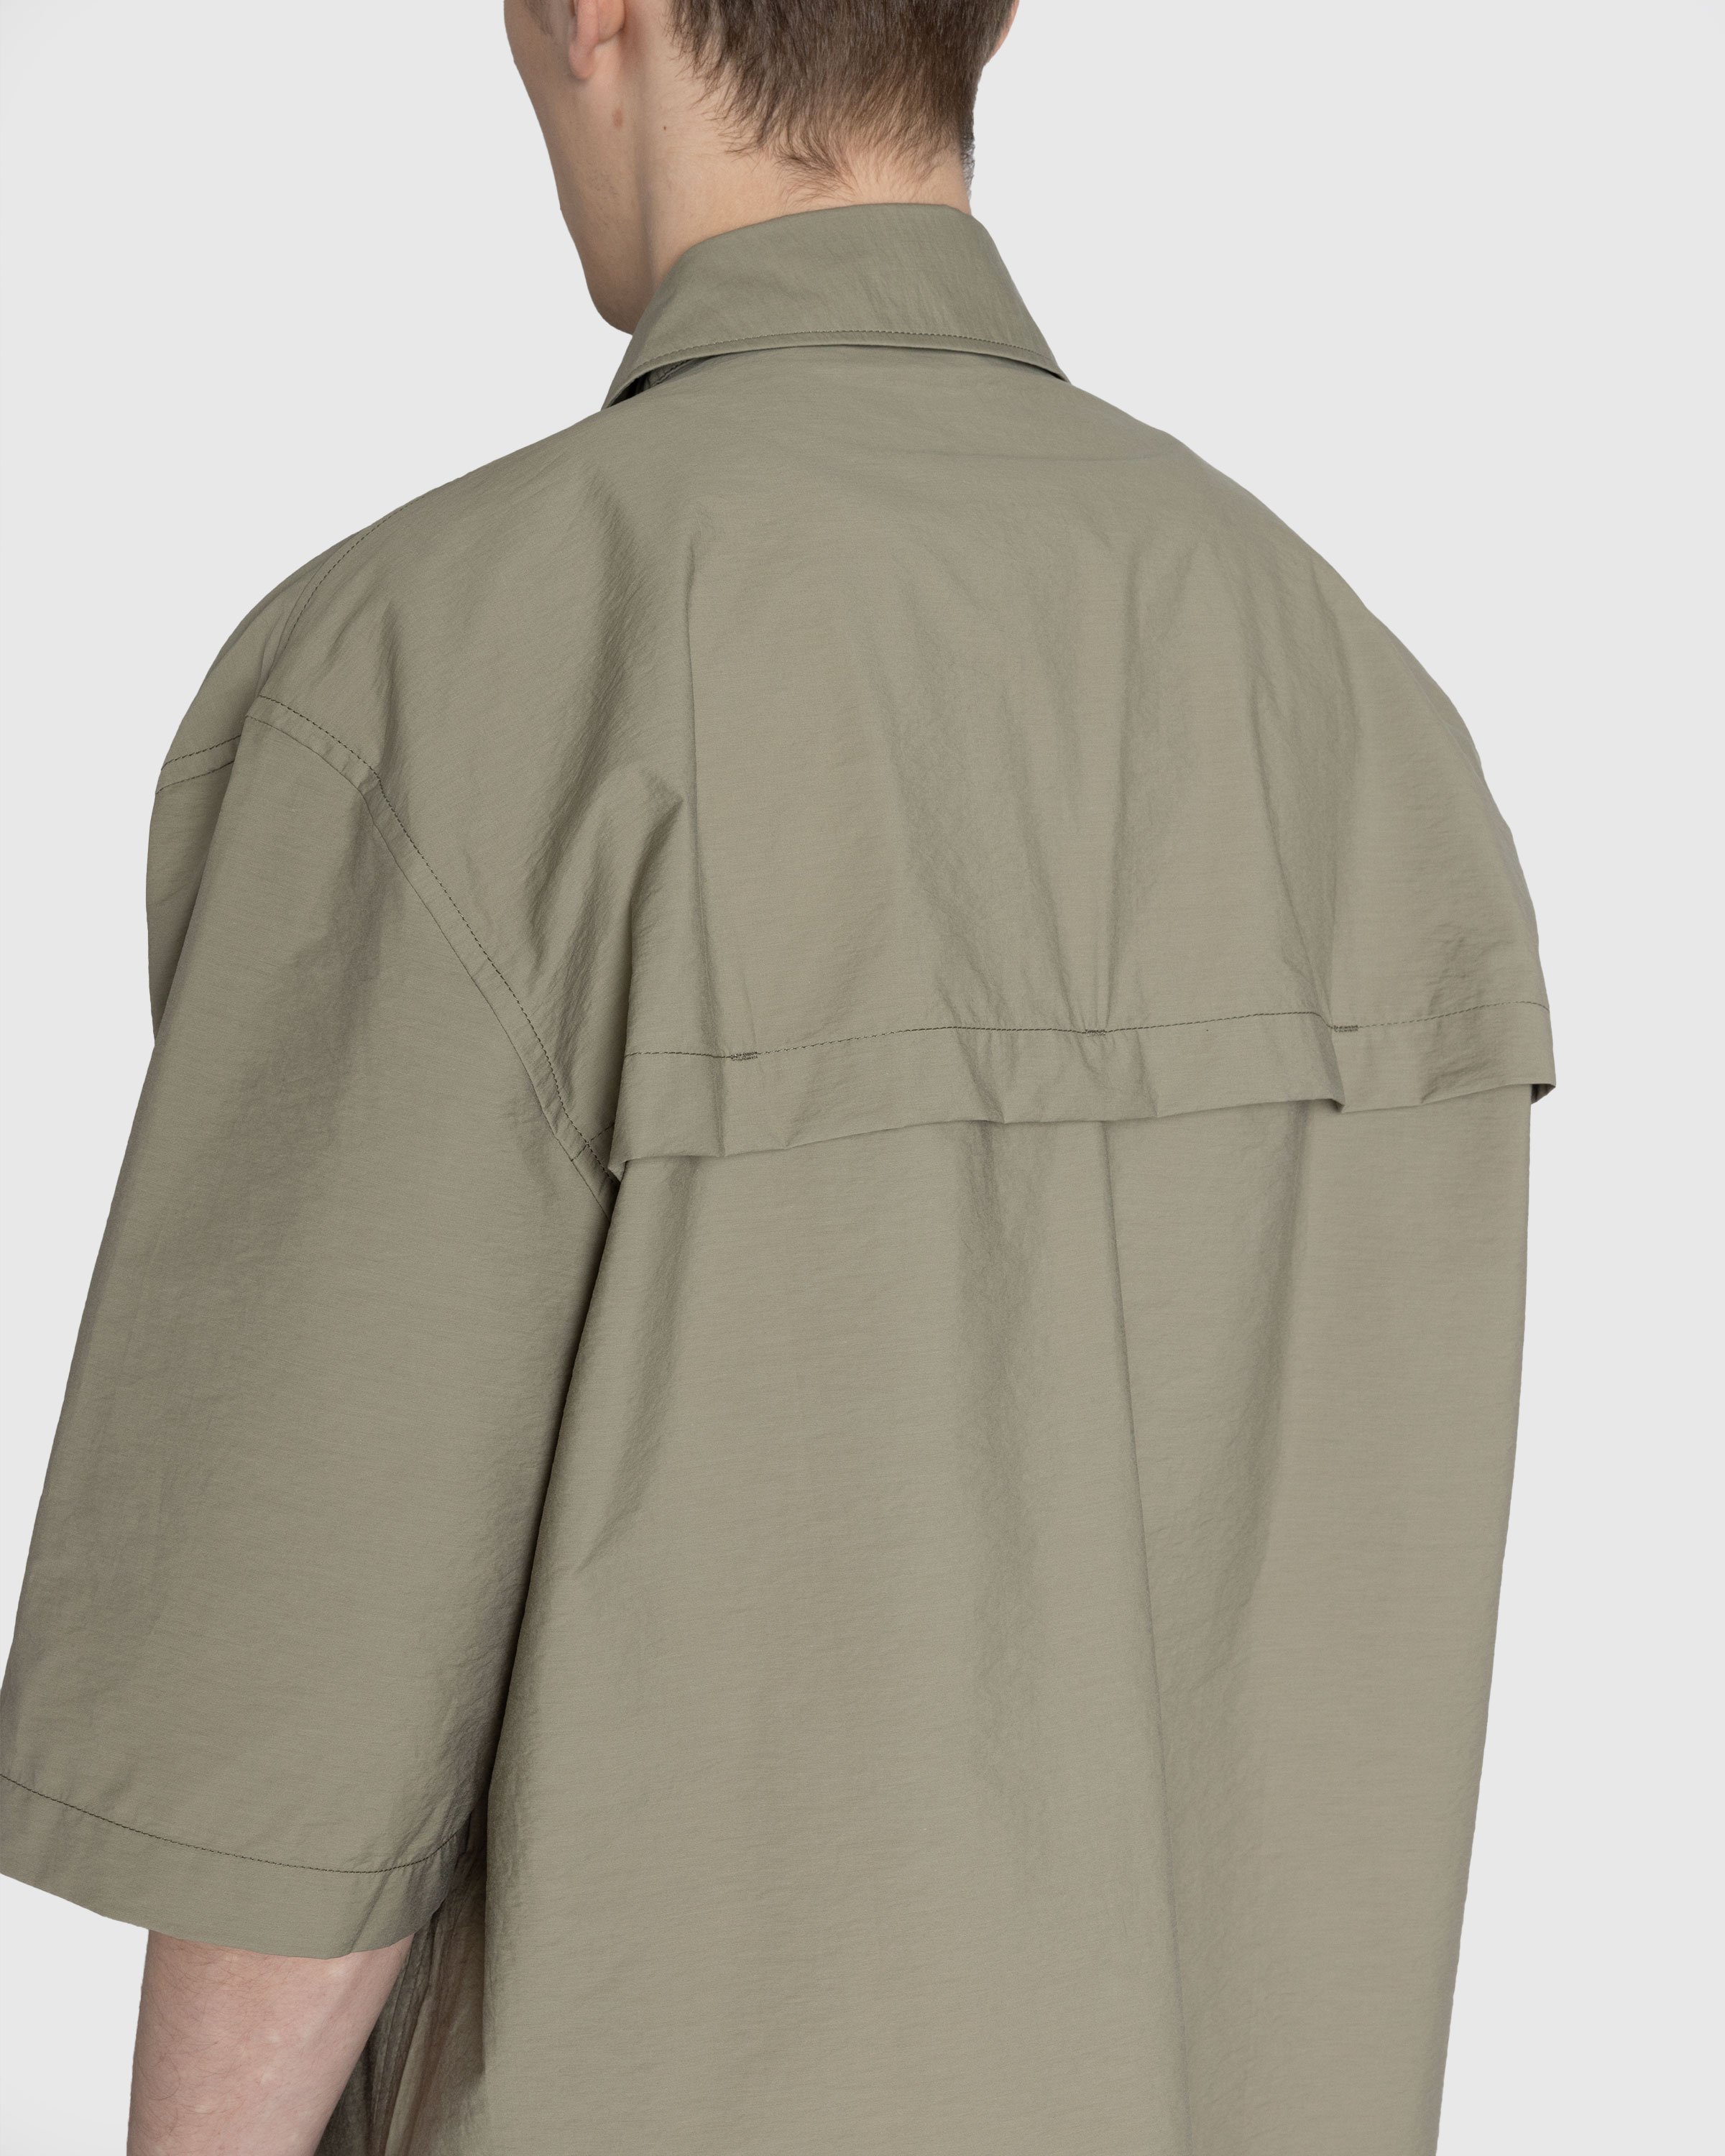 Lemaire – Double Pocket Short-Sleeve Shirt Dusty Khaki - Shirts - Green - Image 5